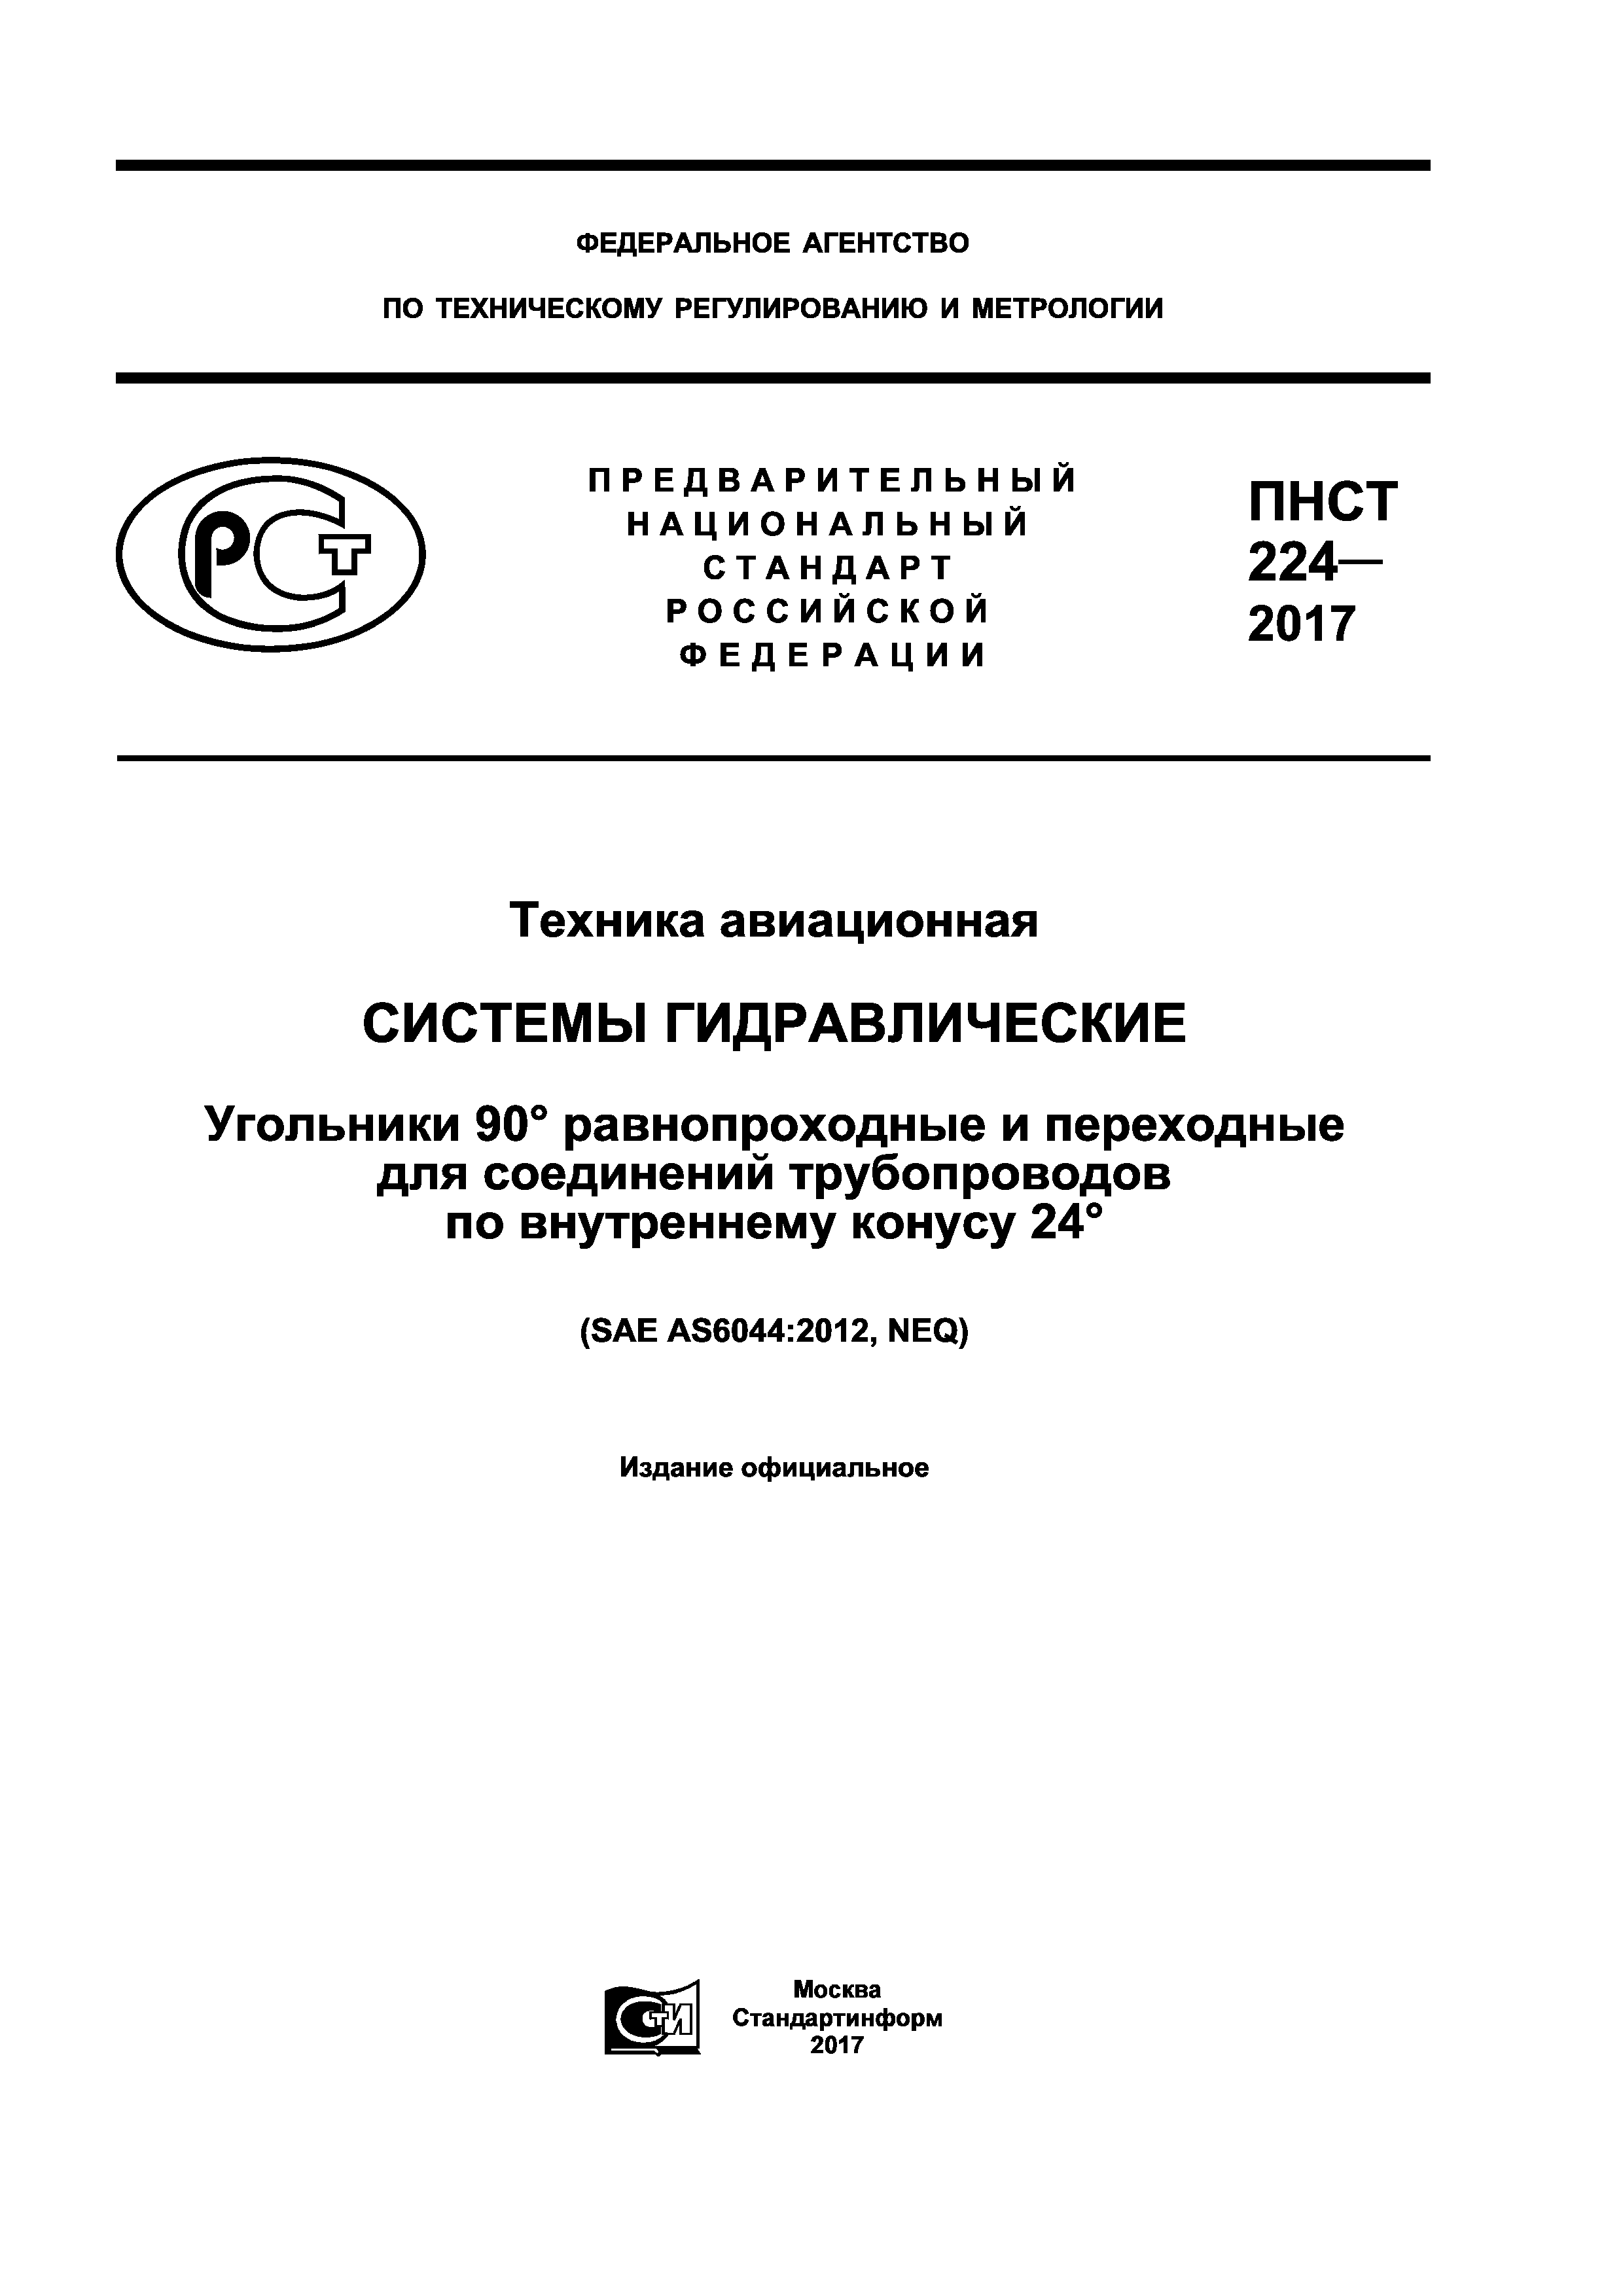 ПНСТ 224-2017